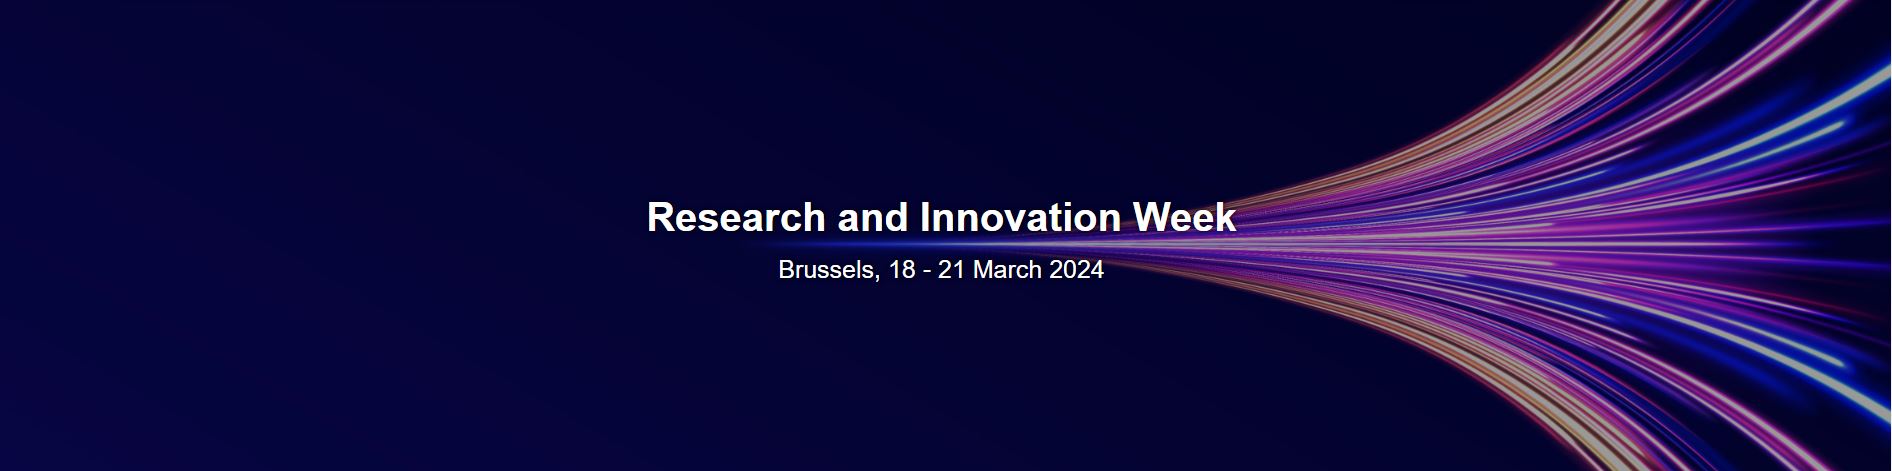 Affiche officielle de la Semaine de la recherche et de l'innovation européenne 2024